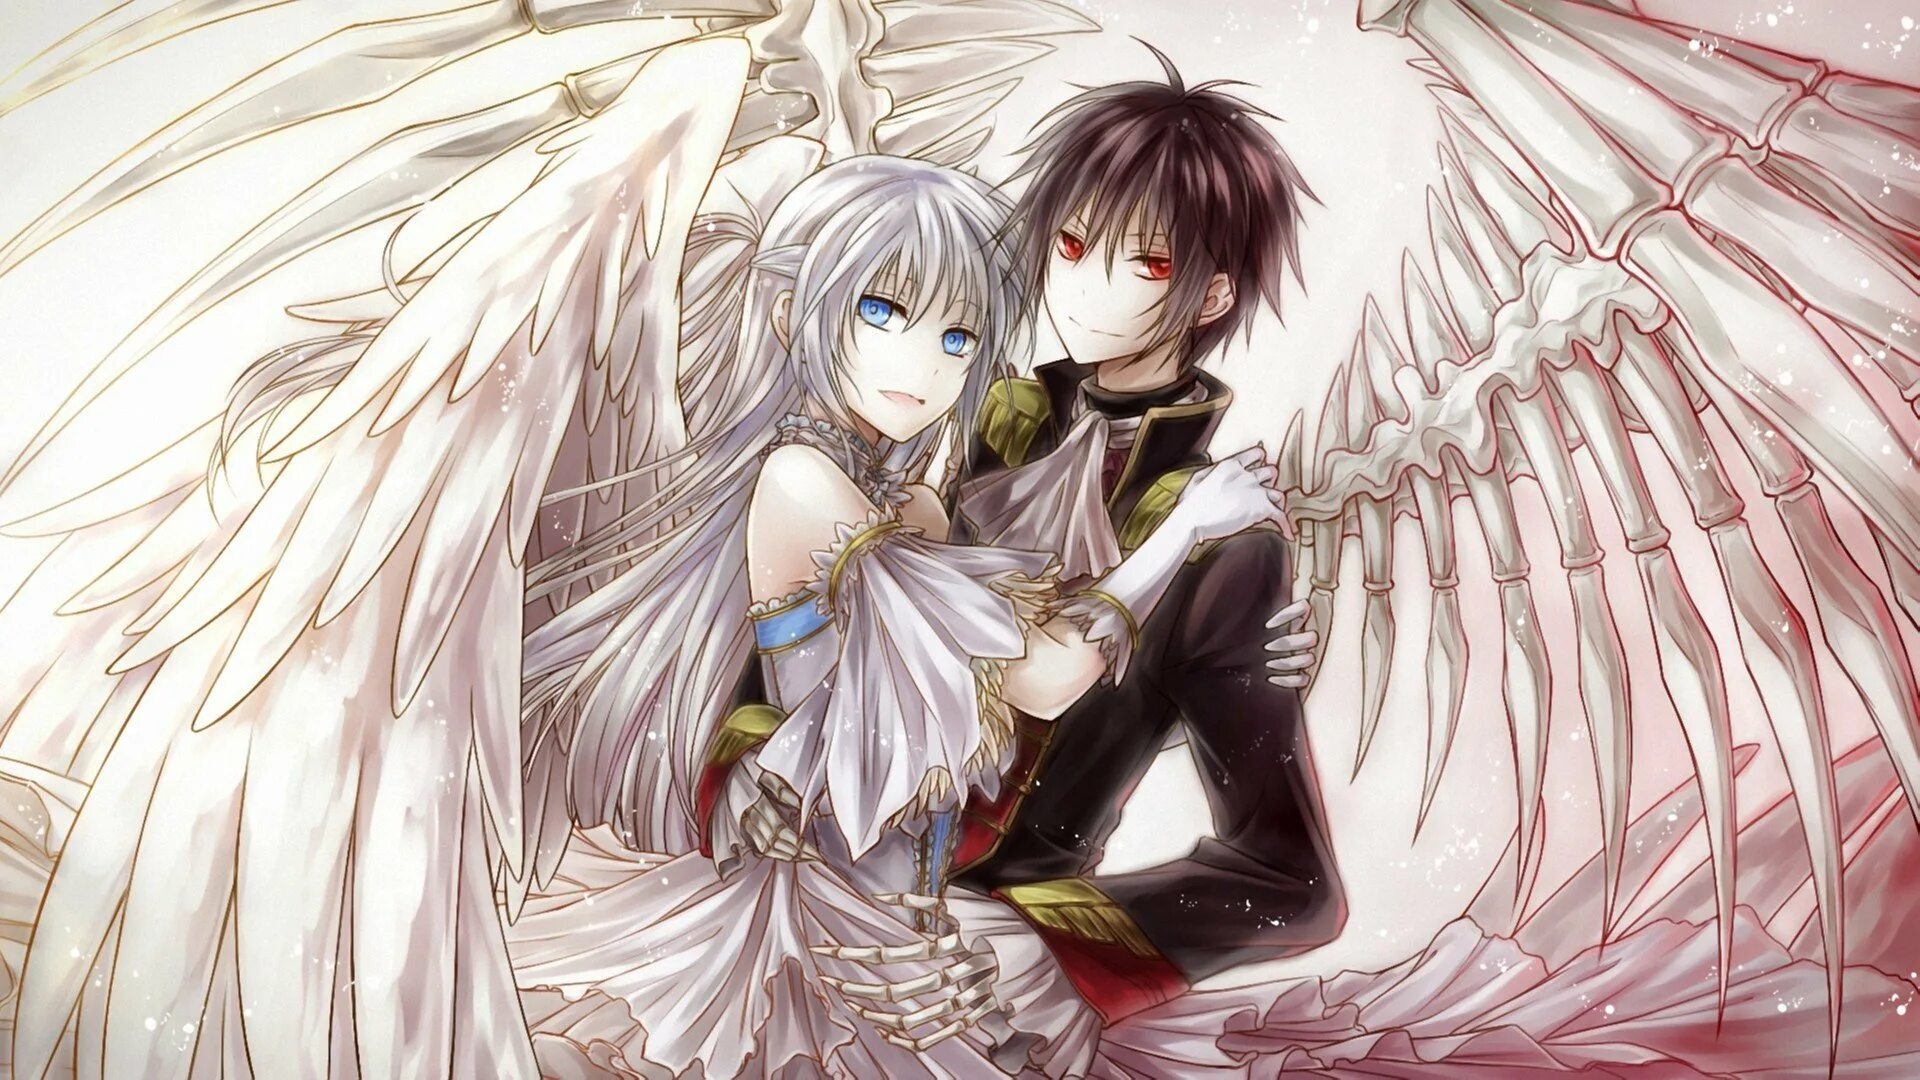 Ангел в танце с демоном персонажи